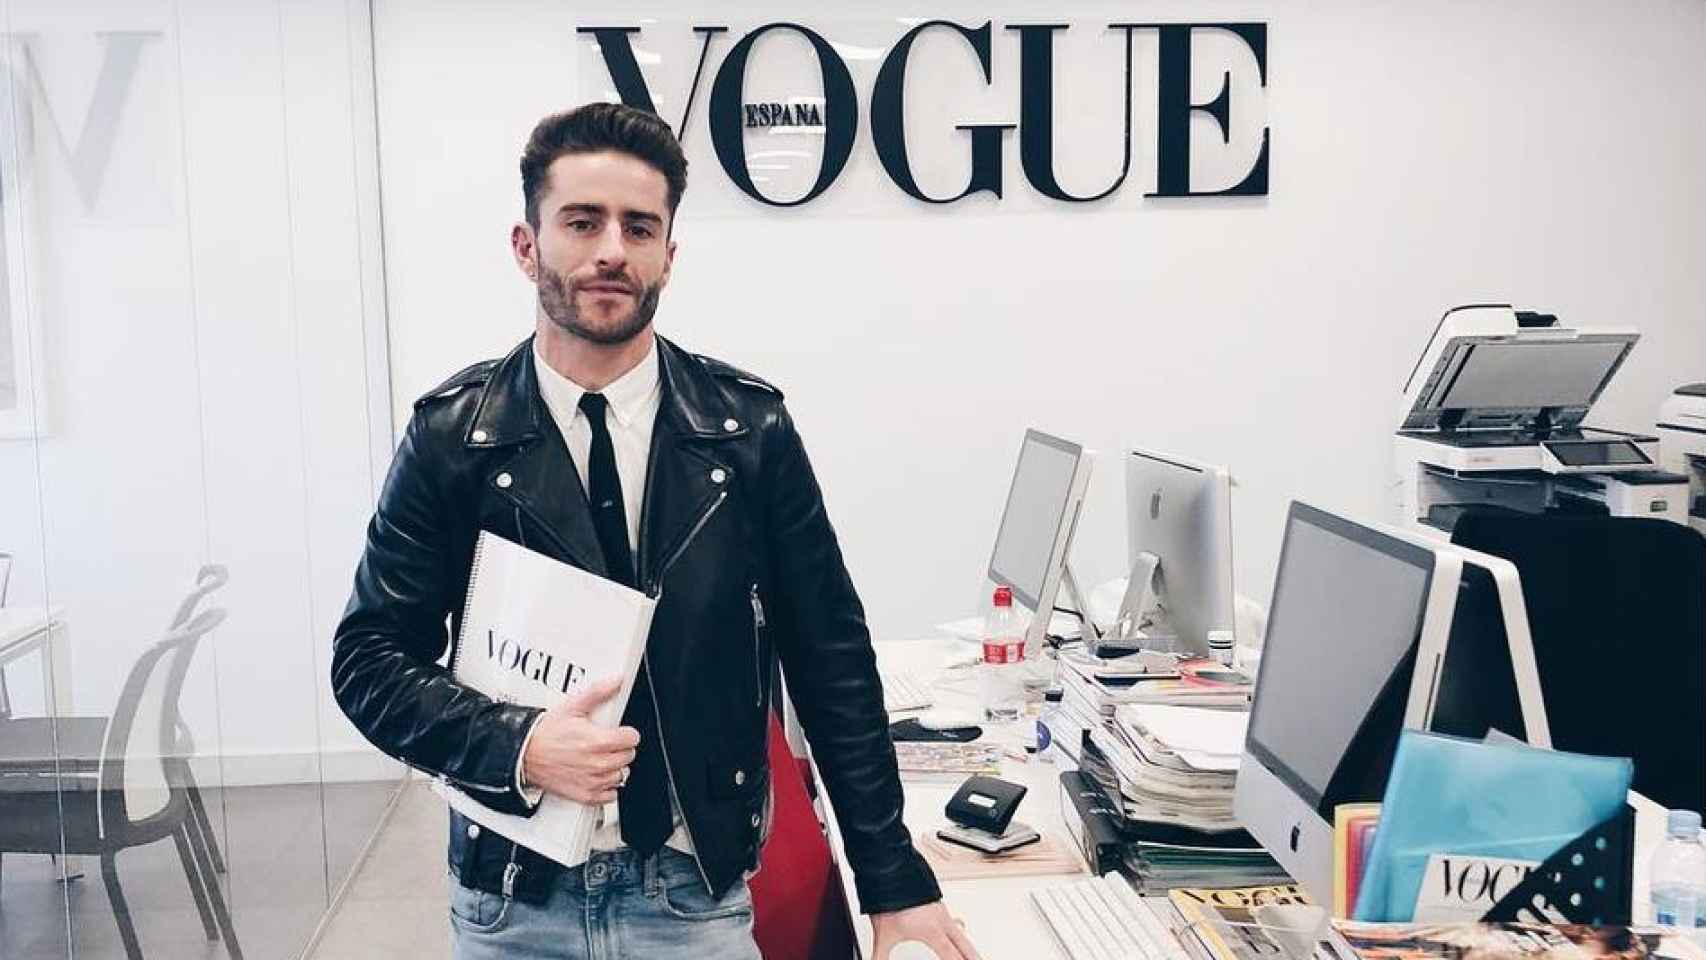 El estilista y diseñador, Pelayo Díaz, ha visitado las oficinas de Vogue España. El joven ha salido muy satisfecho y contento, ya que se han generado debates muy interesantes.